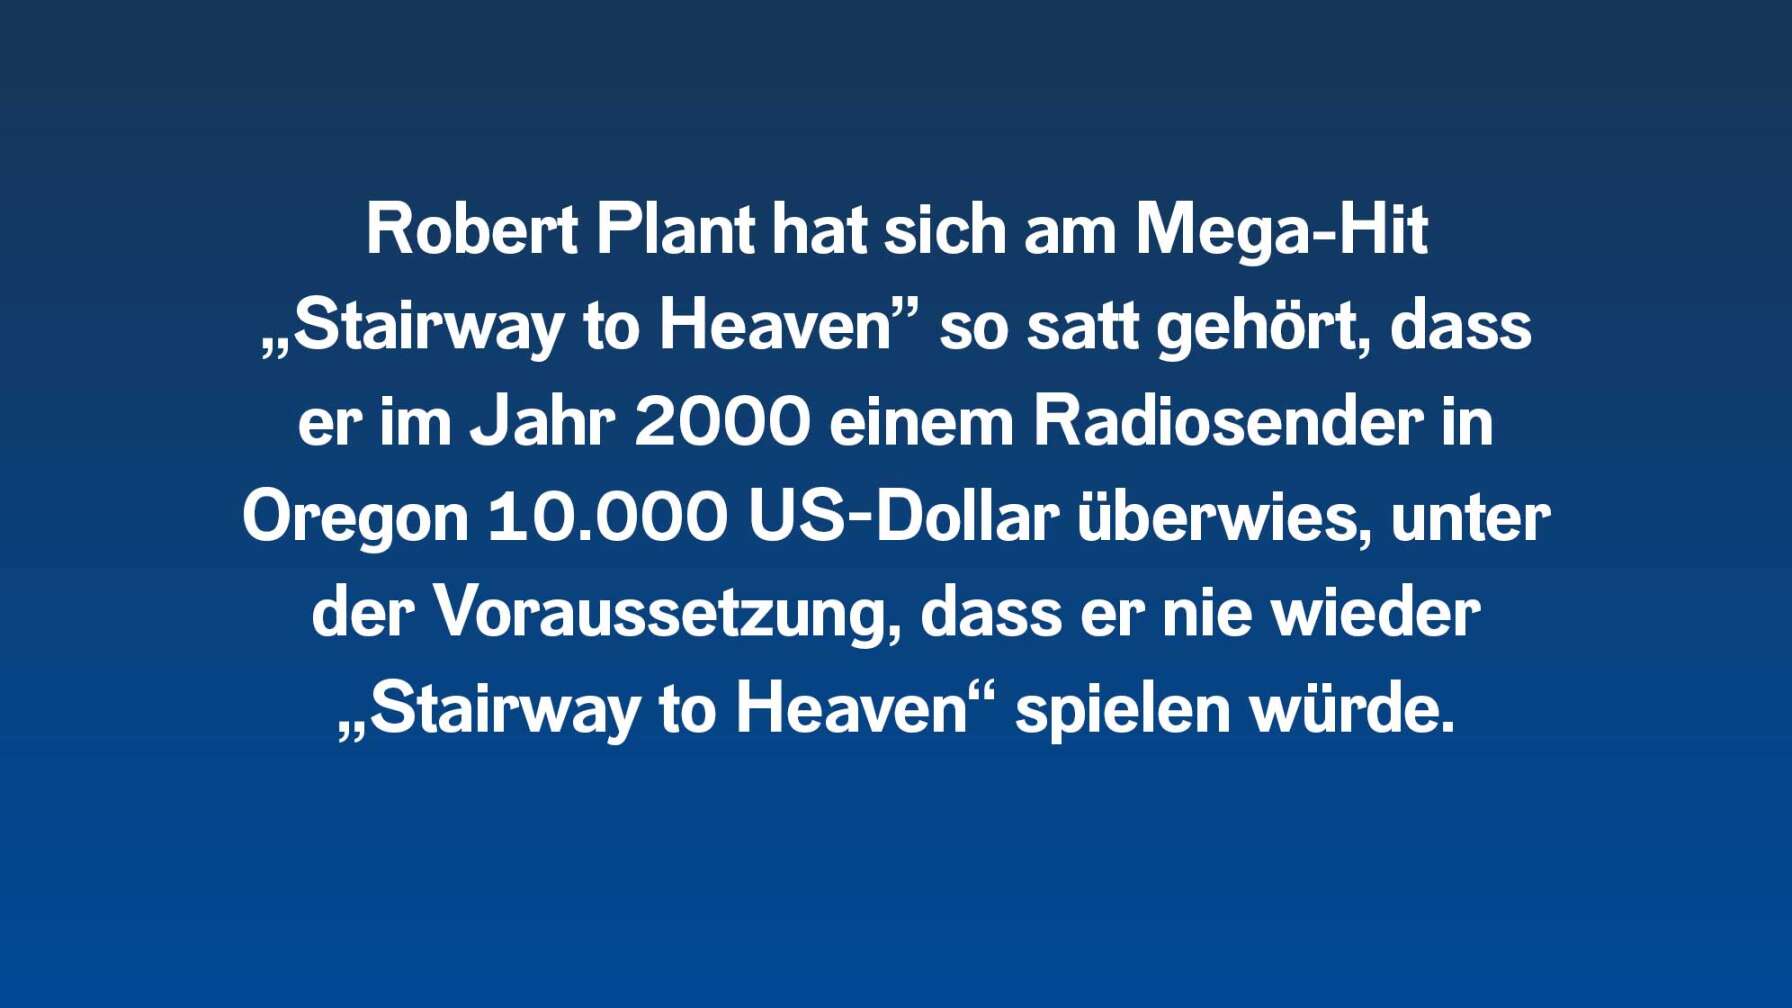 Robert Plant hat sich am Mega-Hit „Stairway to Heaven” so satt gehört, dass er im Jahr 2000 einem Radiosender in Oregon 10.000 US-Dollar überwies, unter der Voraussetzung, dass er nie wieder „Stairway to Heaven“ spielen würde.